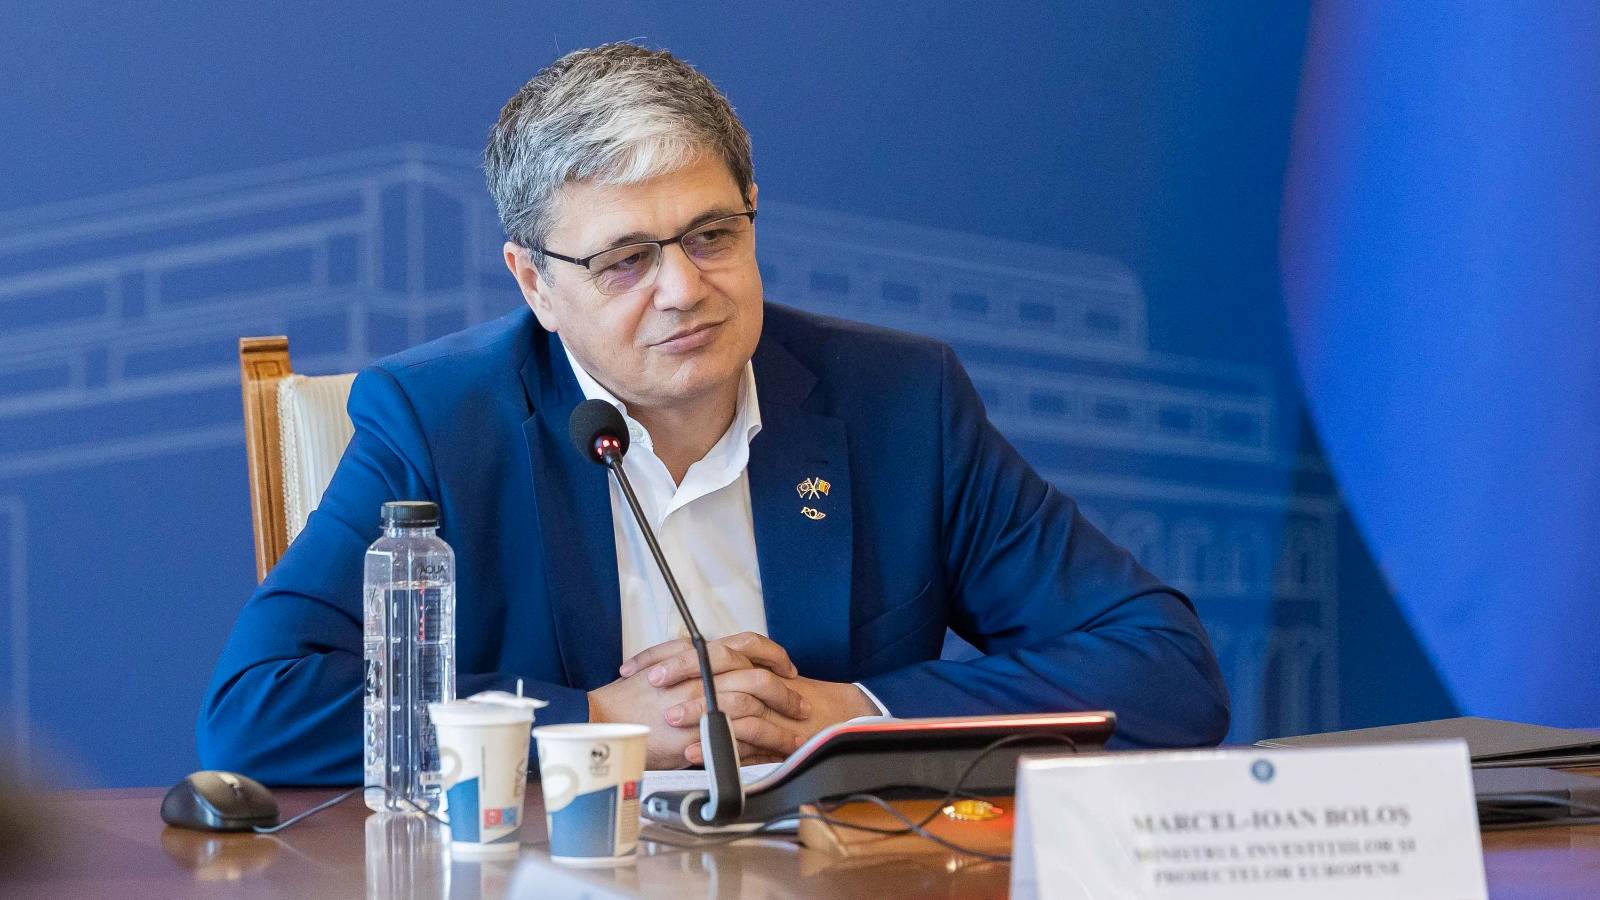 Marcel Bolos ÜBERRASCHT Rumänen TOLLE Nachrichten Europäische Kommission